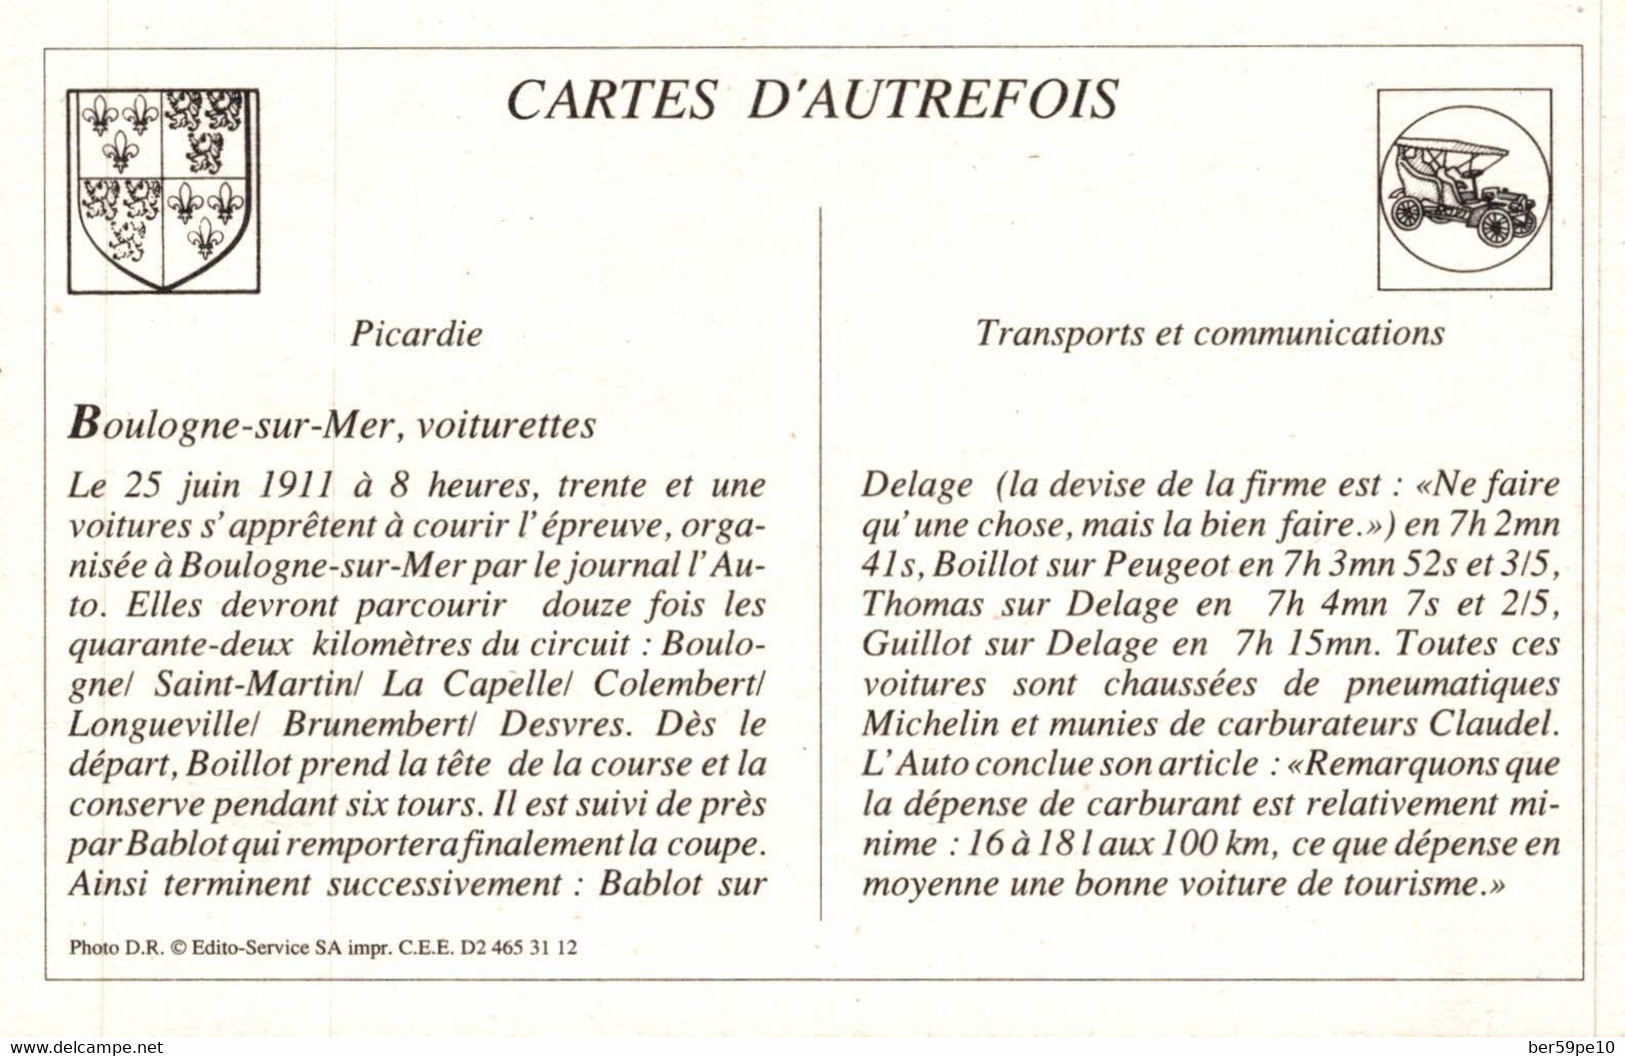 CARTE D'AUTREFOIS  TRANSPORTS ET COMMUNICATIONS  - PICARDIE  BOULOGNE-SUR-MER VOITURETTES - Picardie